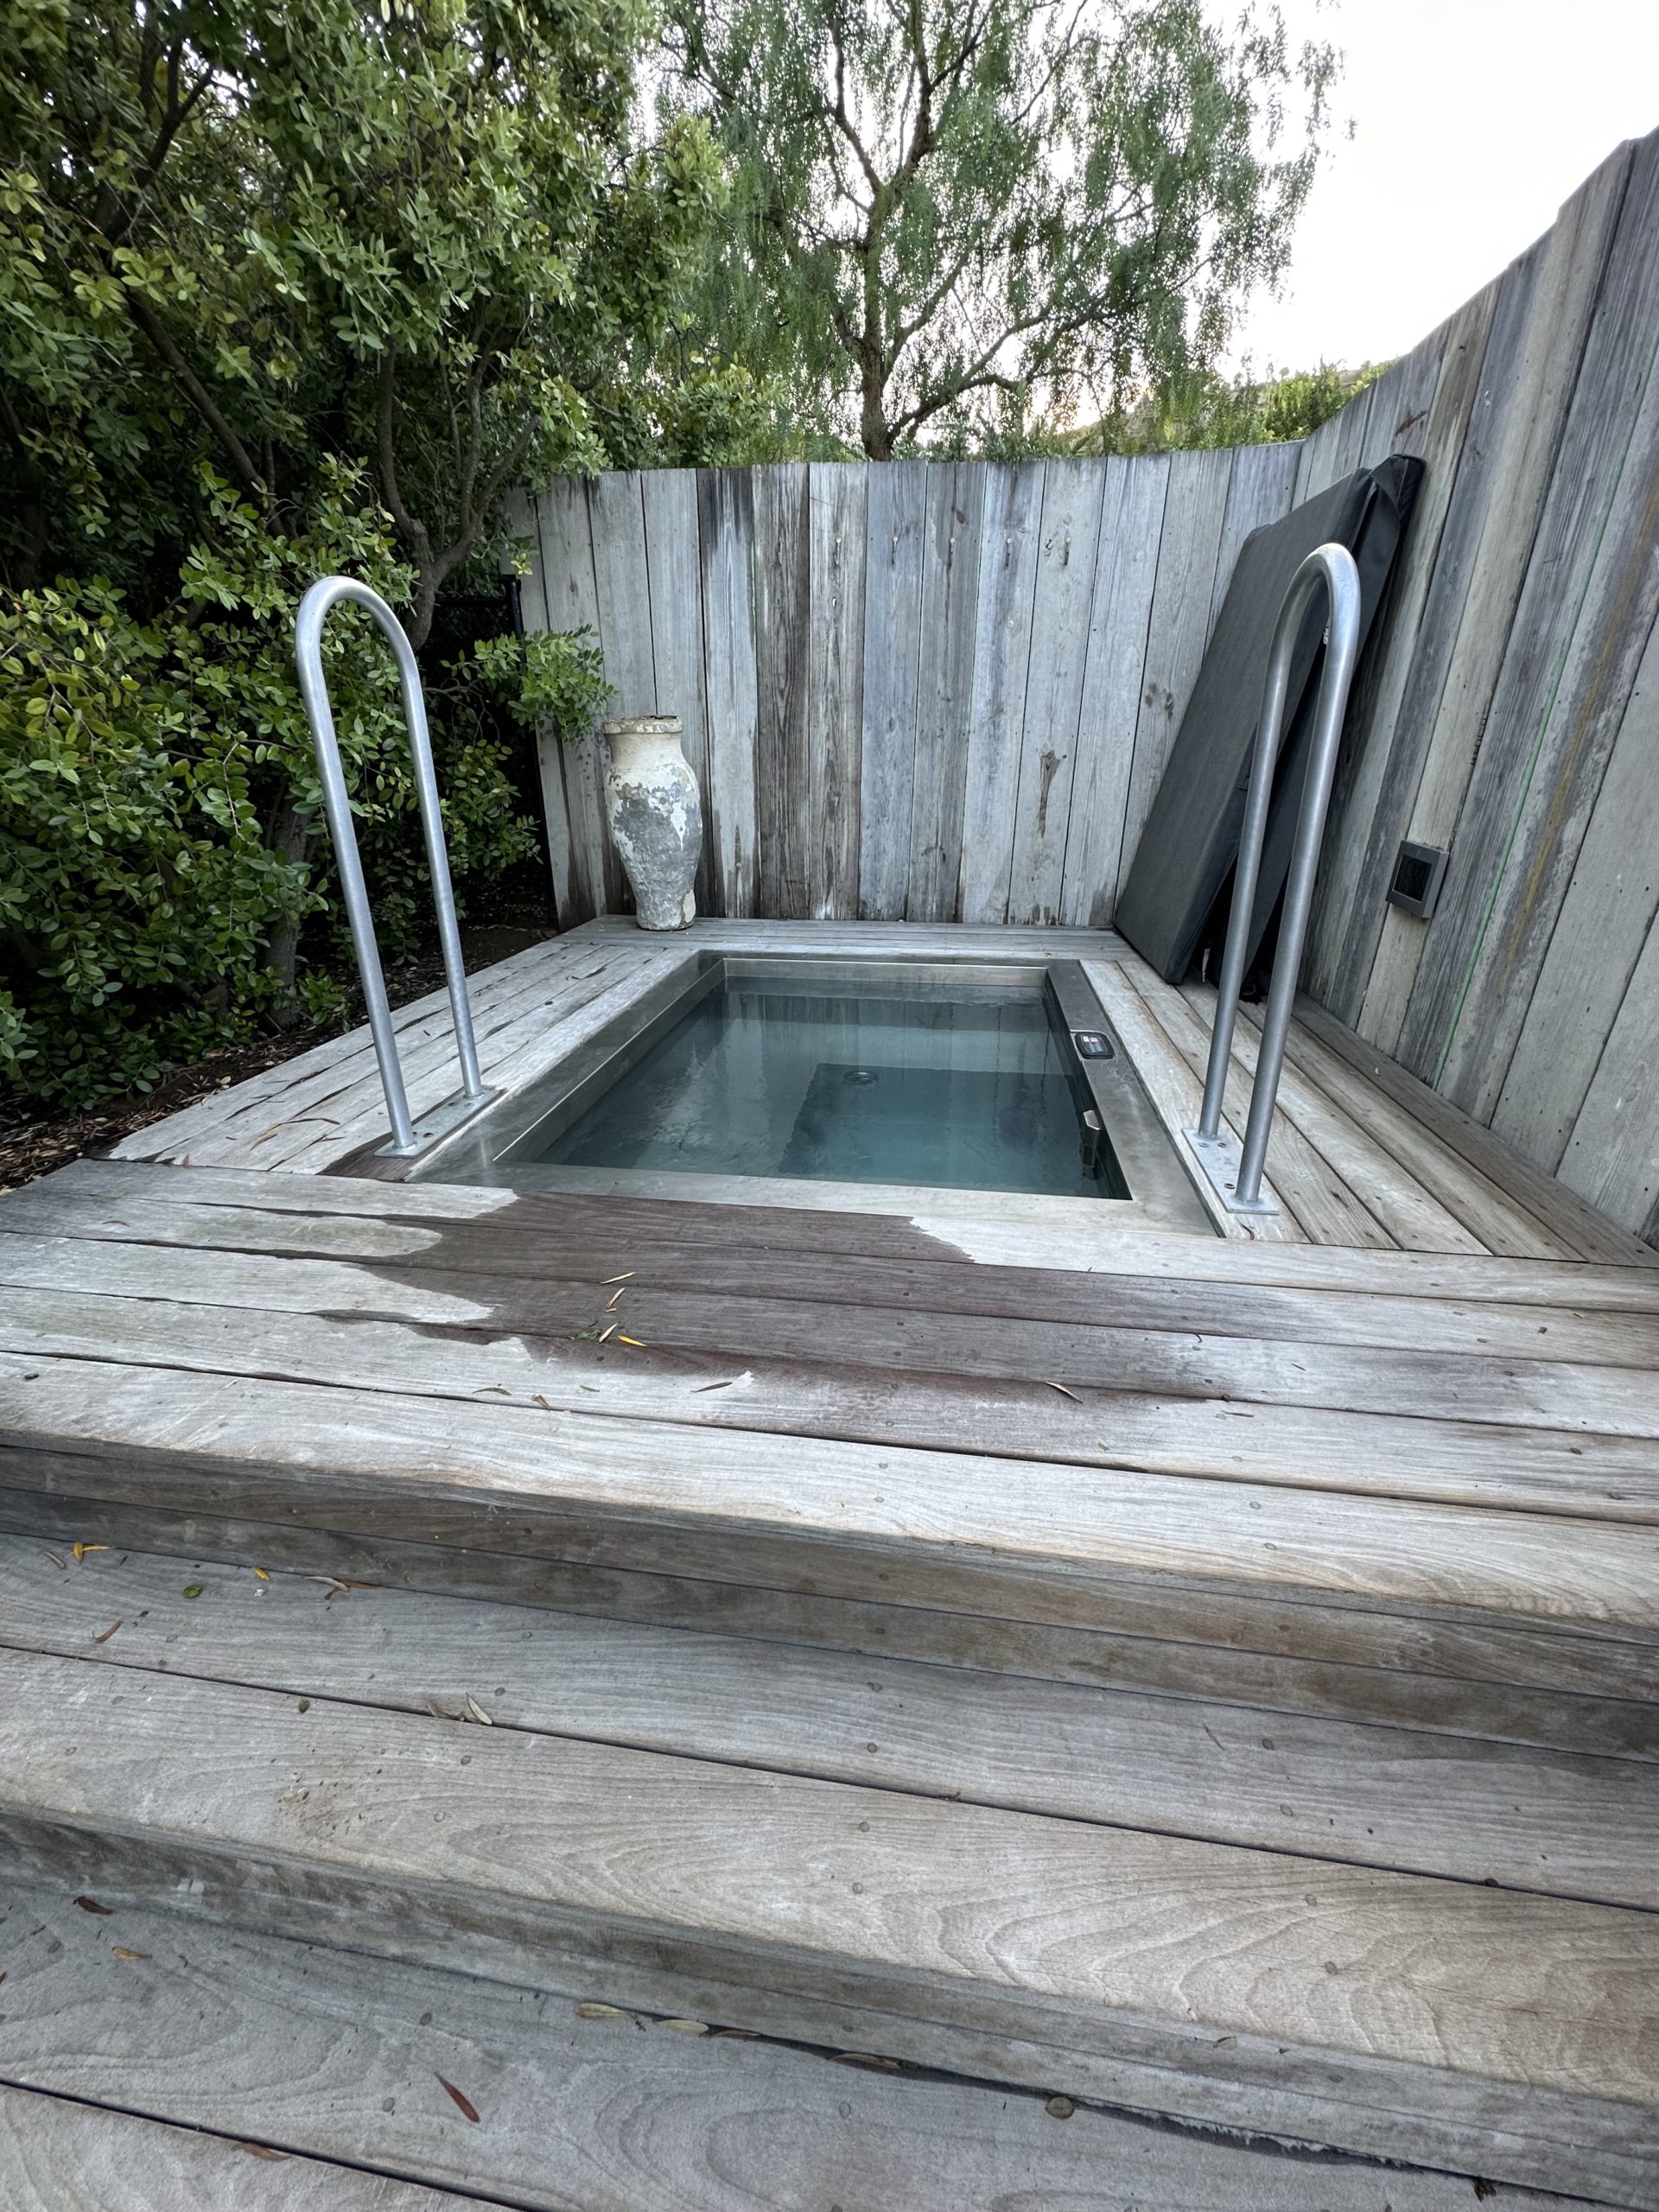 cold plunge pool sunken into a wooden platform